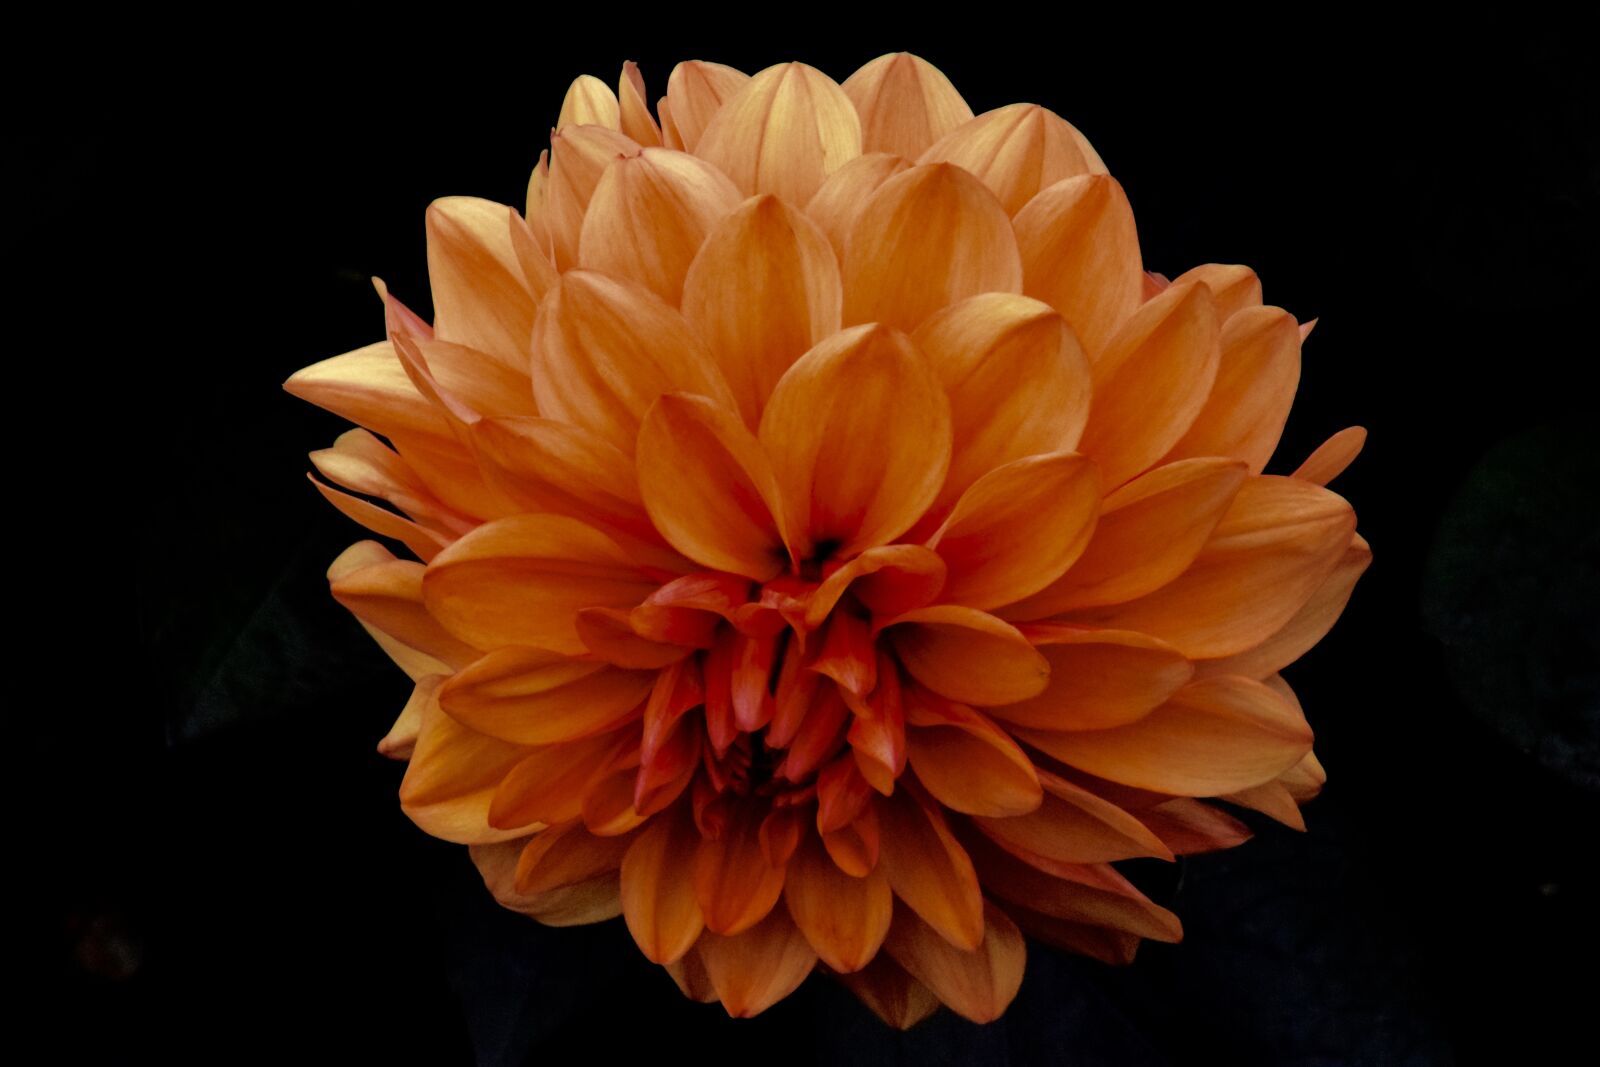 Nikon D5300 sample photo. Flower, petals, plant photography